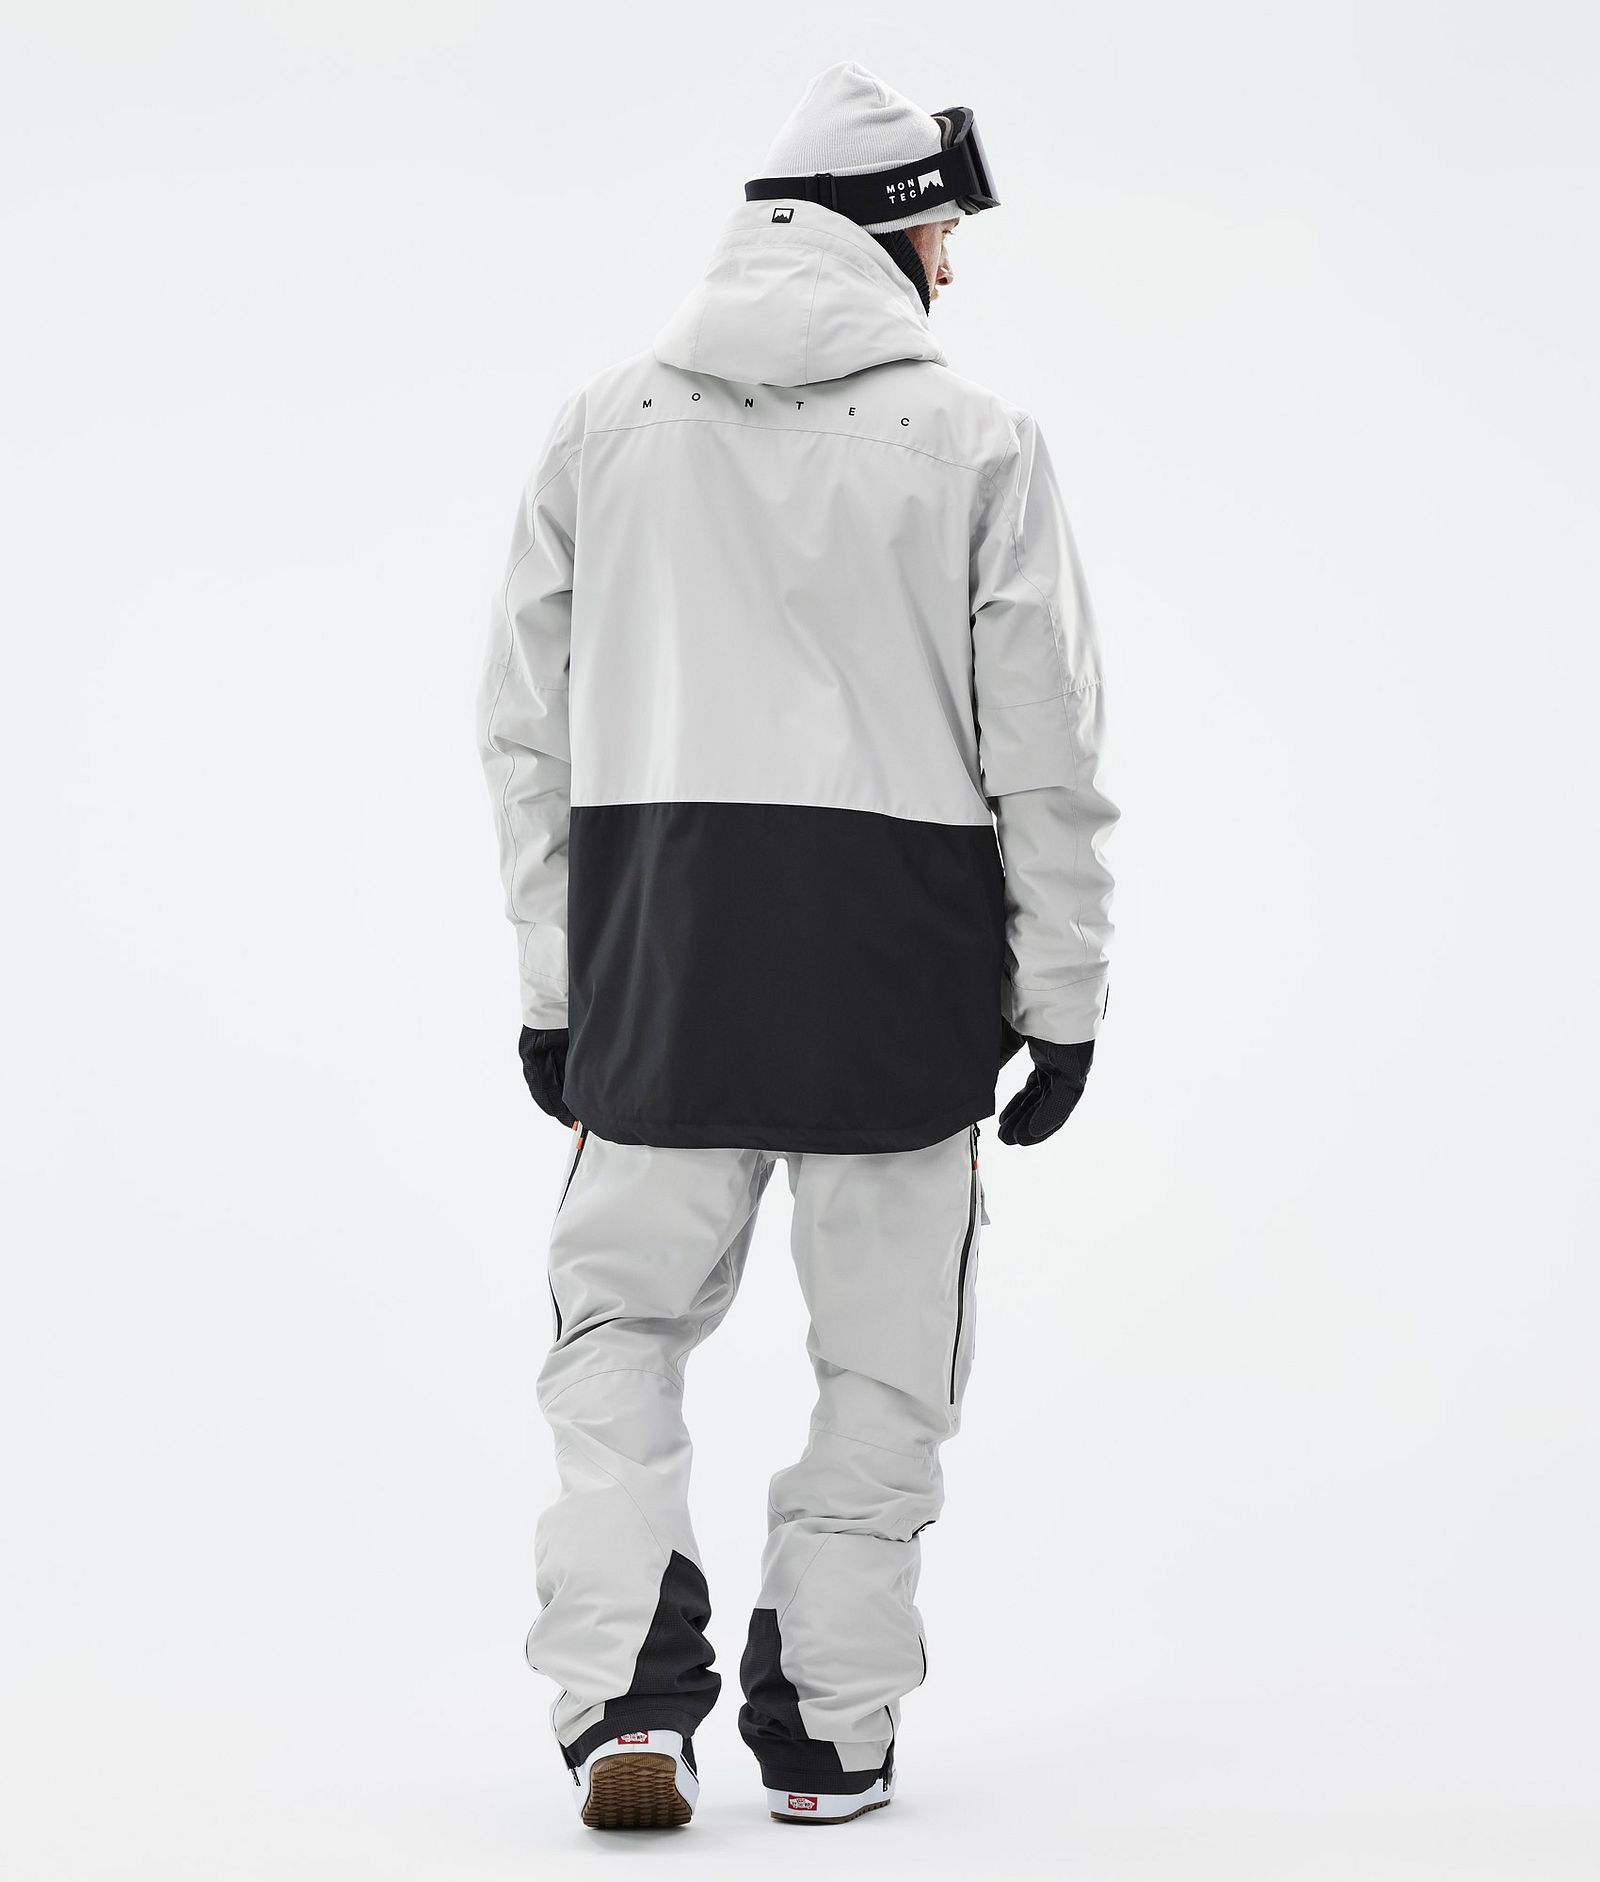 Fawk Veste Snowboard Homme Light Grey/Black